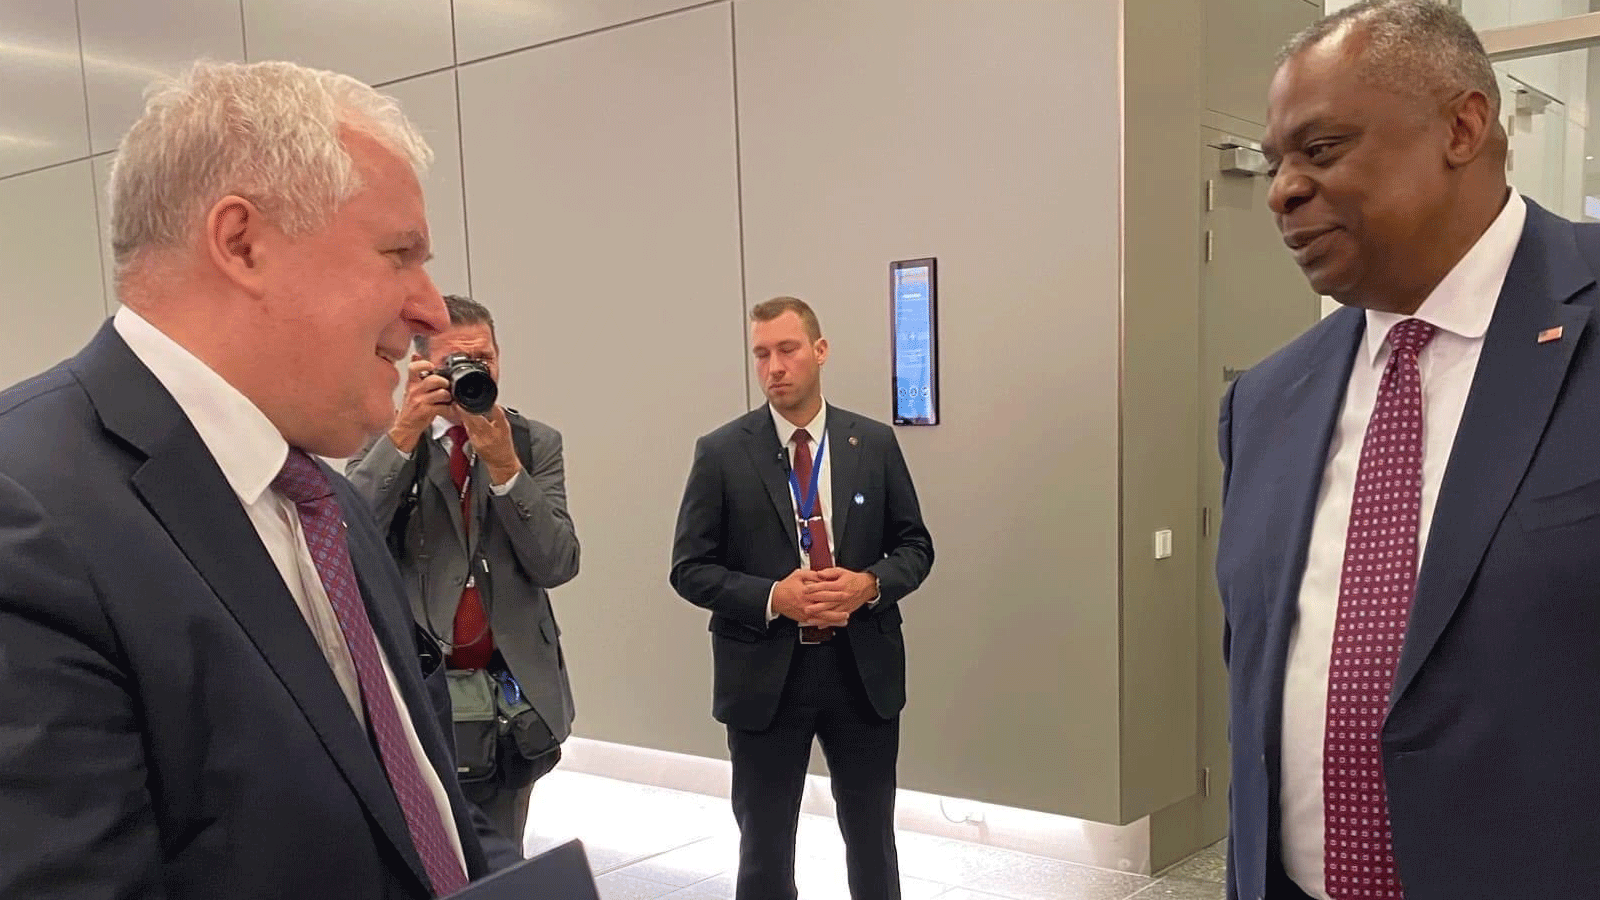 وزير الدفاع الليتواني أرفيداس أنوساوسكاس في ختام اجتماع في بروكسل مع نظيره الأميركي لويد أوستن(تويتر)